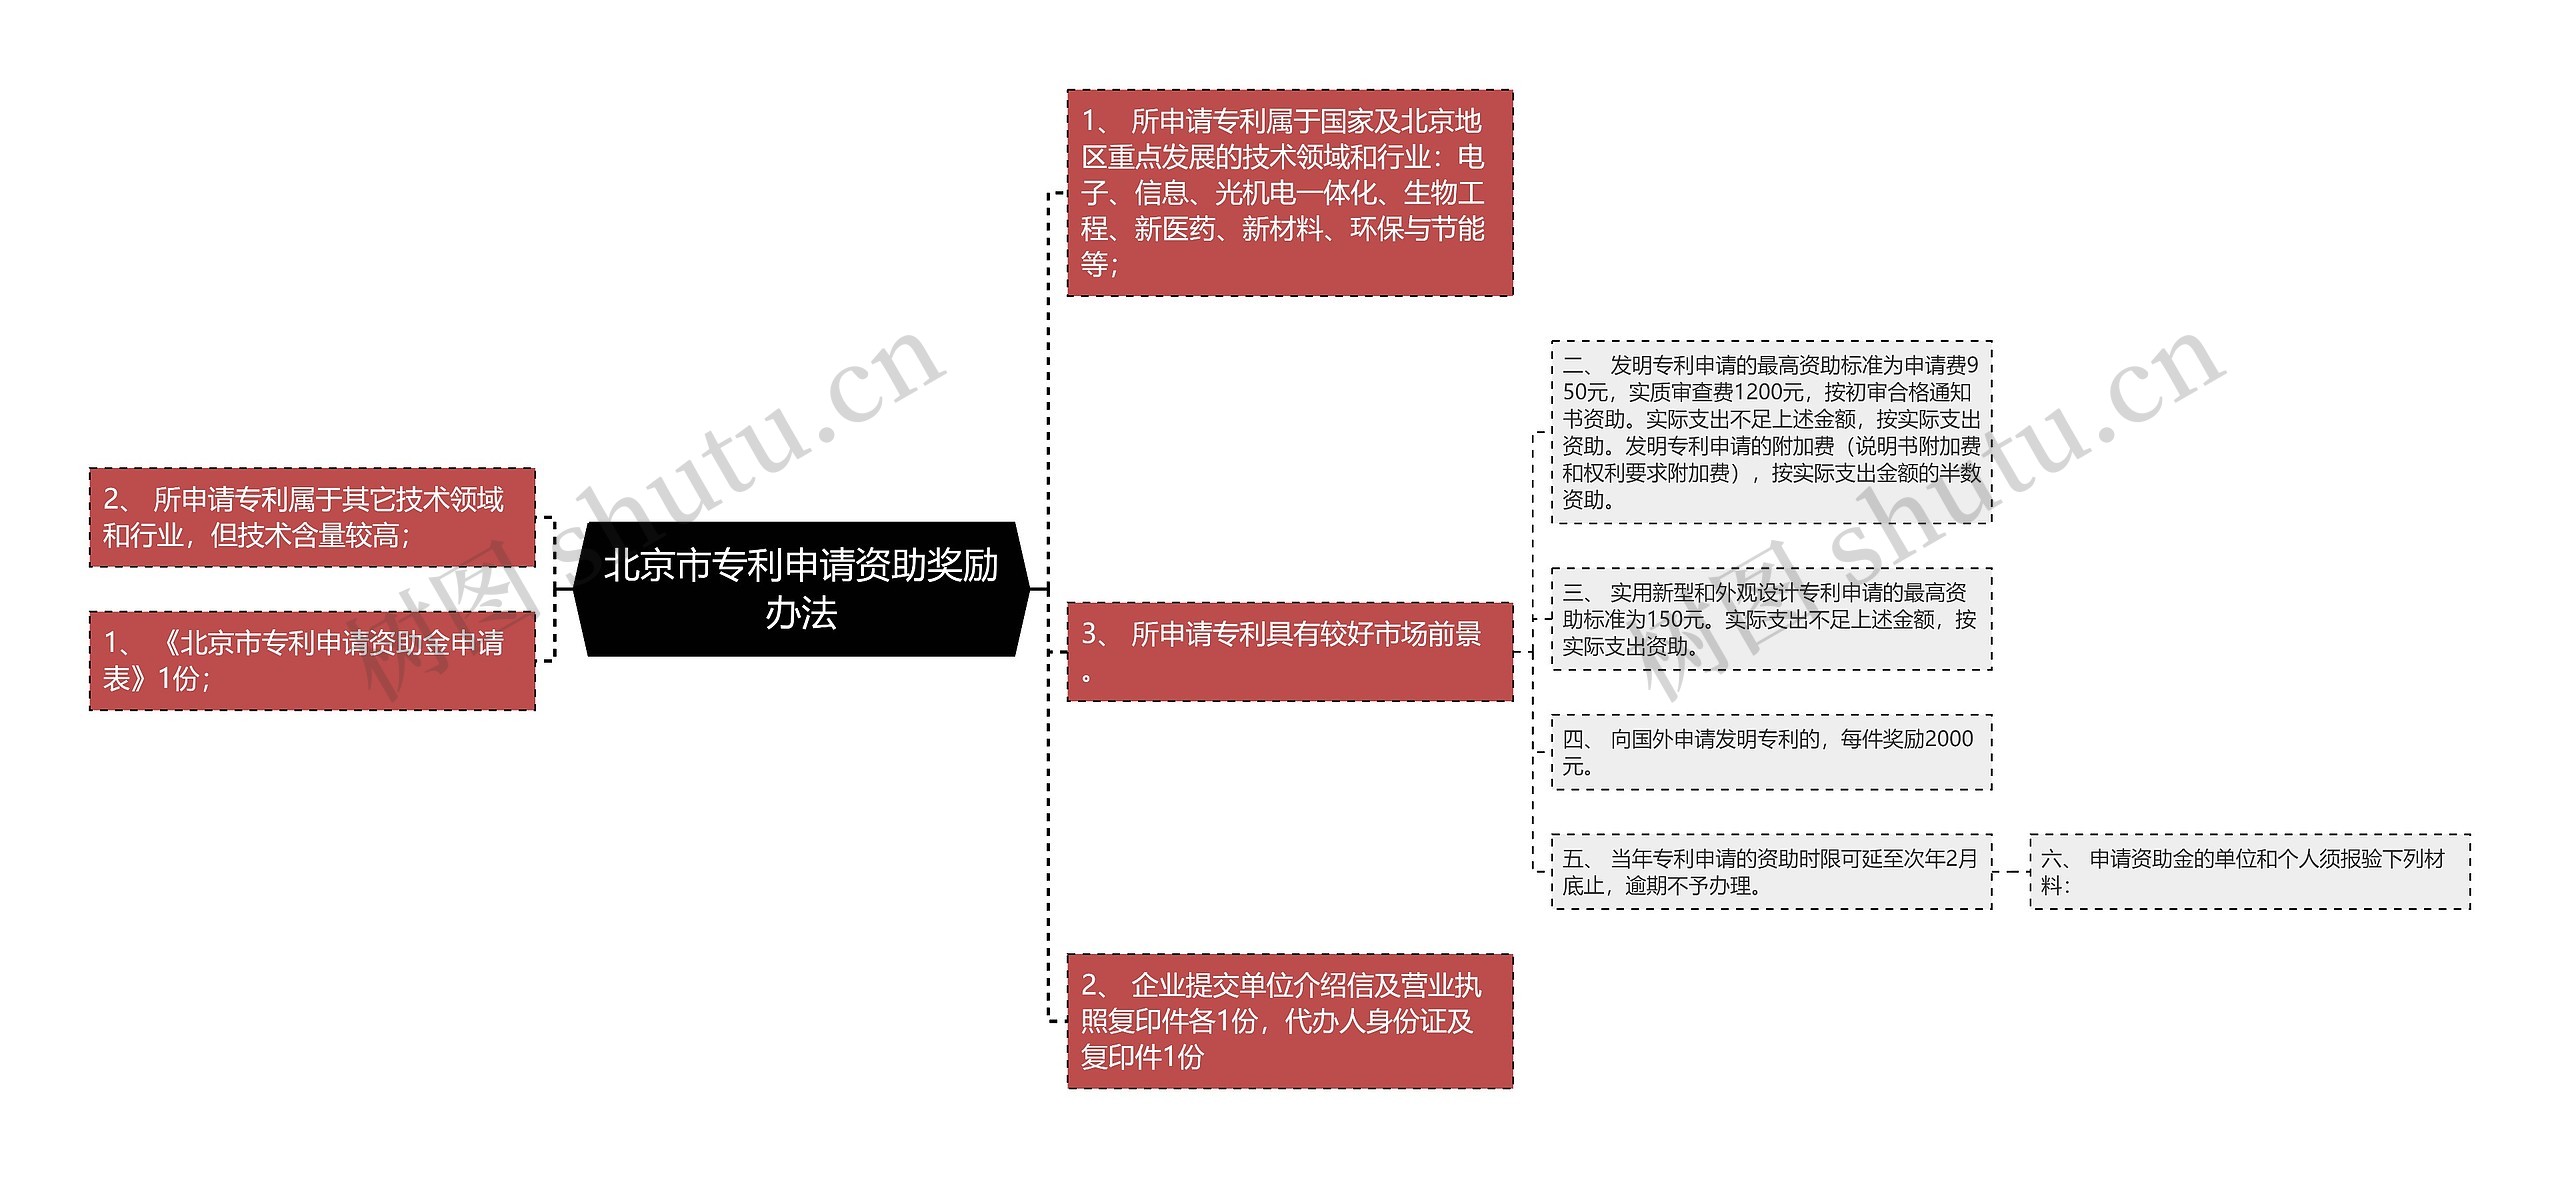 北京市专利申请资助奖励办法